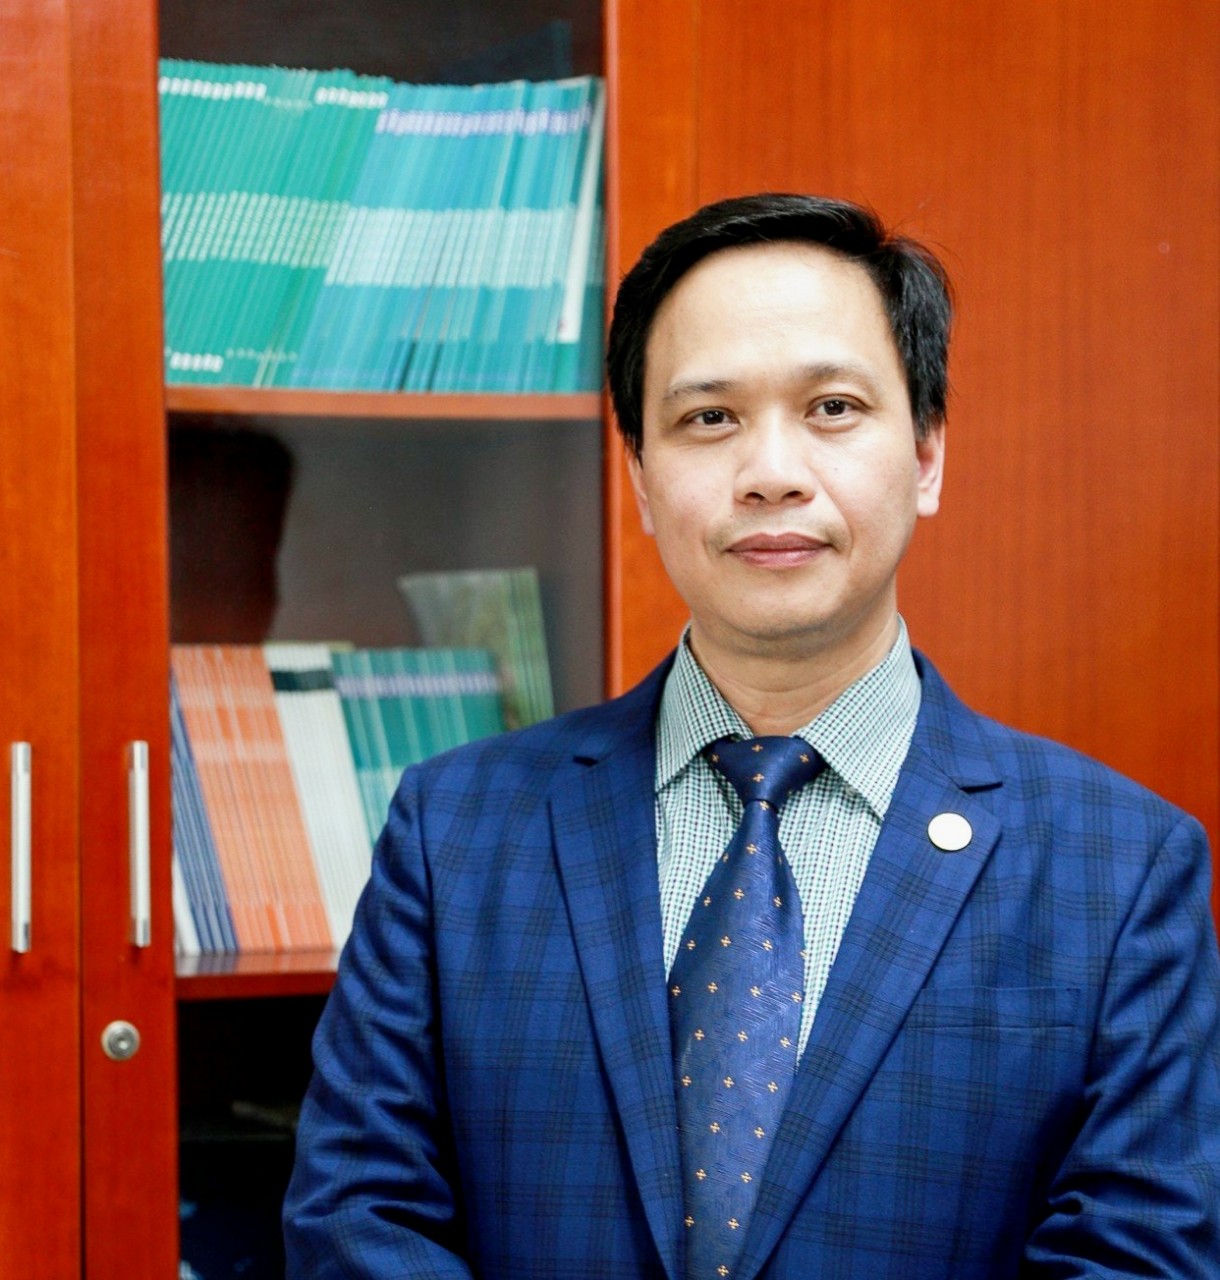 TS. Nguyễn Quốc Việt - Phó Viện trưởng Viện nghiên cứu Kinh tế và Chính sách (Đại học Quốc gia Hà Nội)